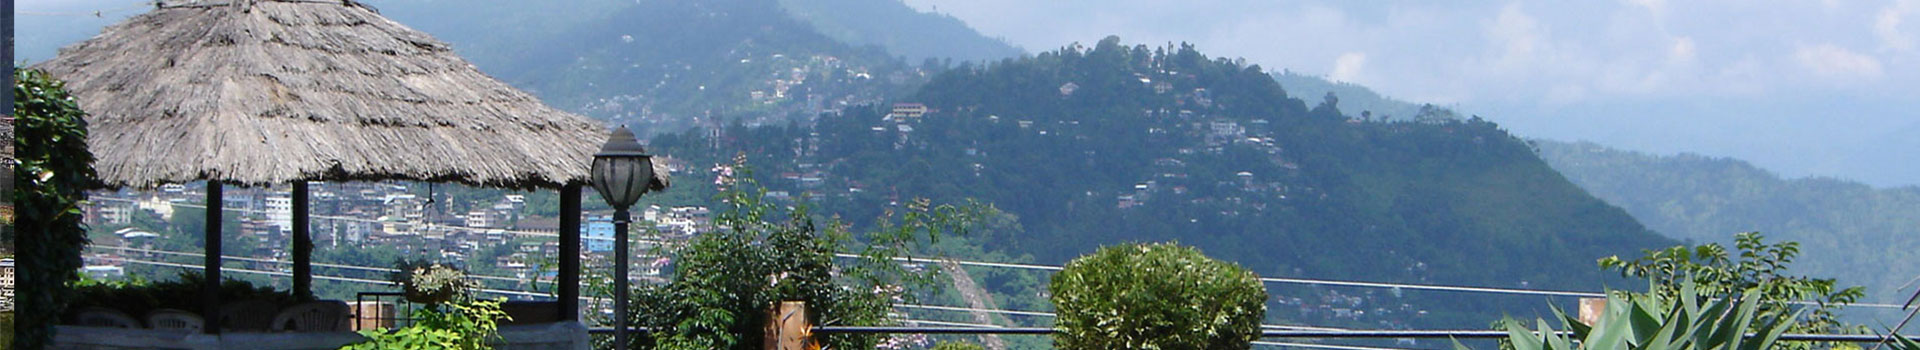 Darjeeling-Kalimpong 04 NIGHTS / 05 DAYS